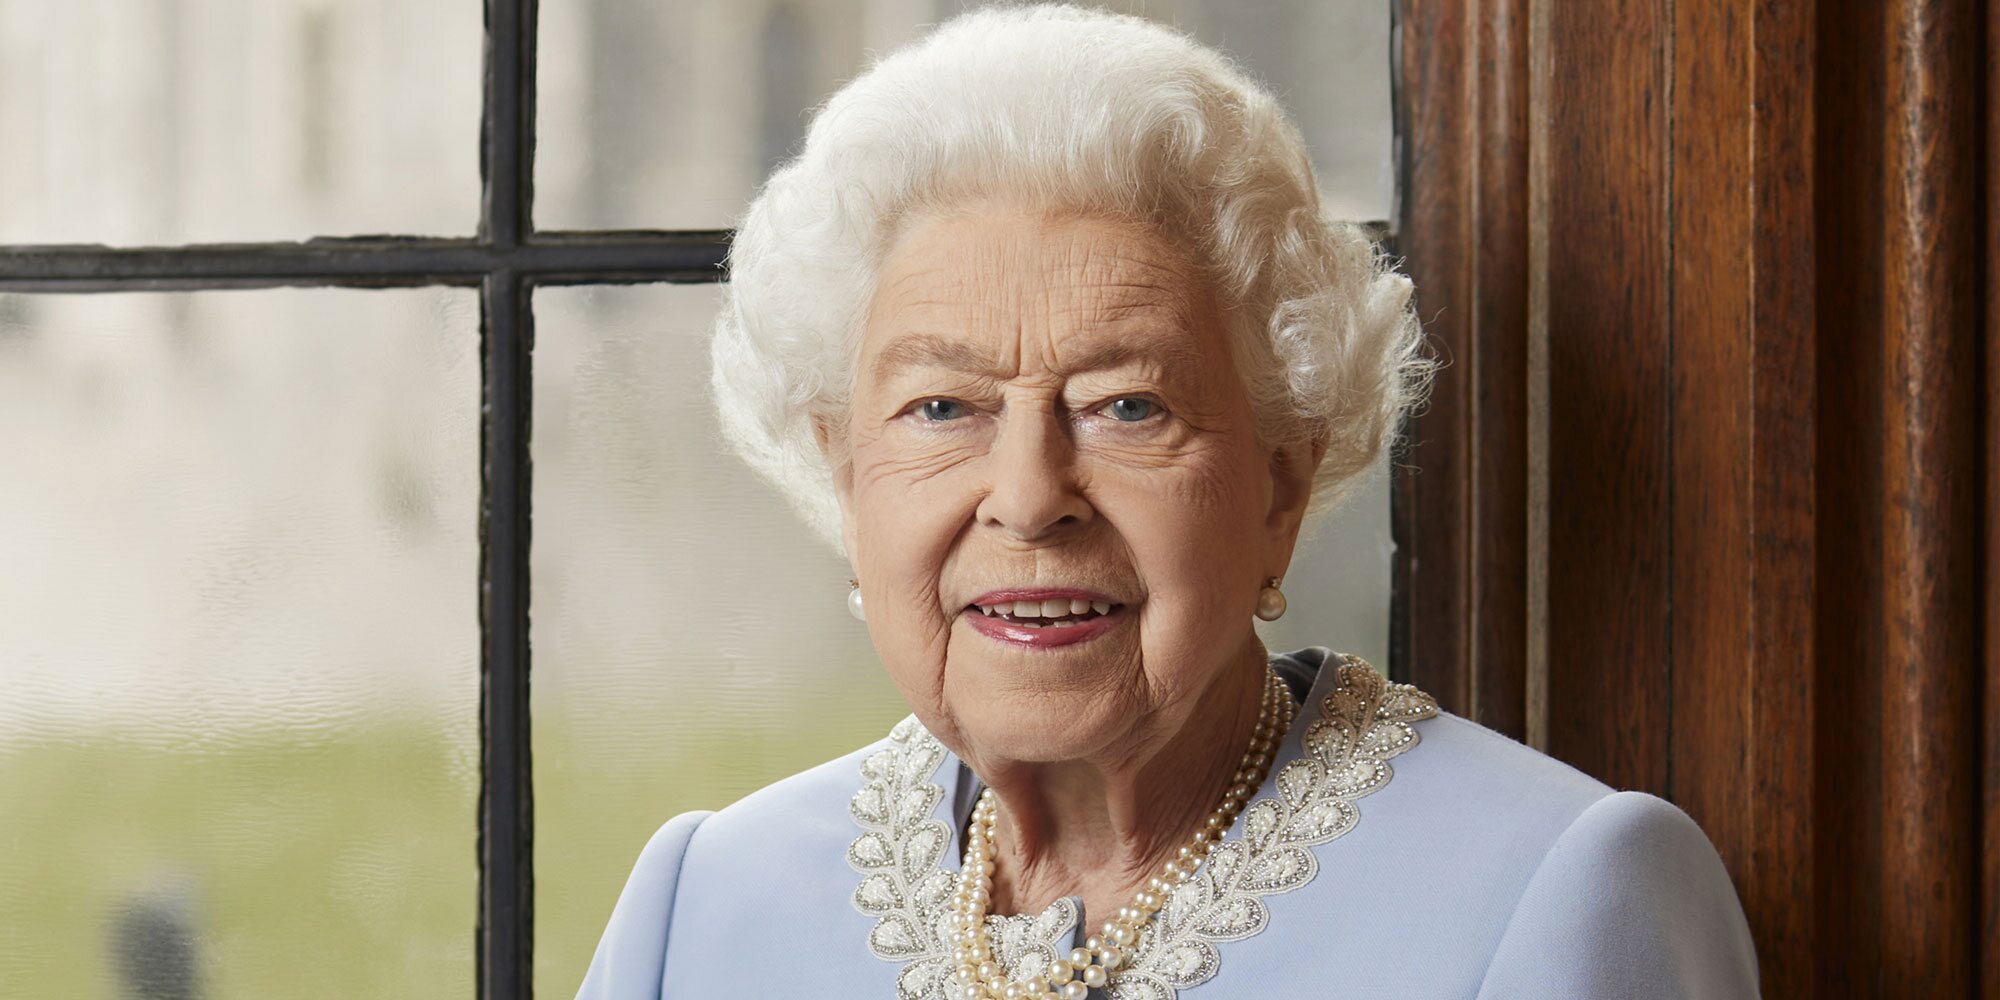 El final de la larga vida de la Reina Isabel II: Jubileo de Platino, apoyo a Carlos y Camilla y reinando hasta la muerte